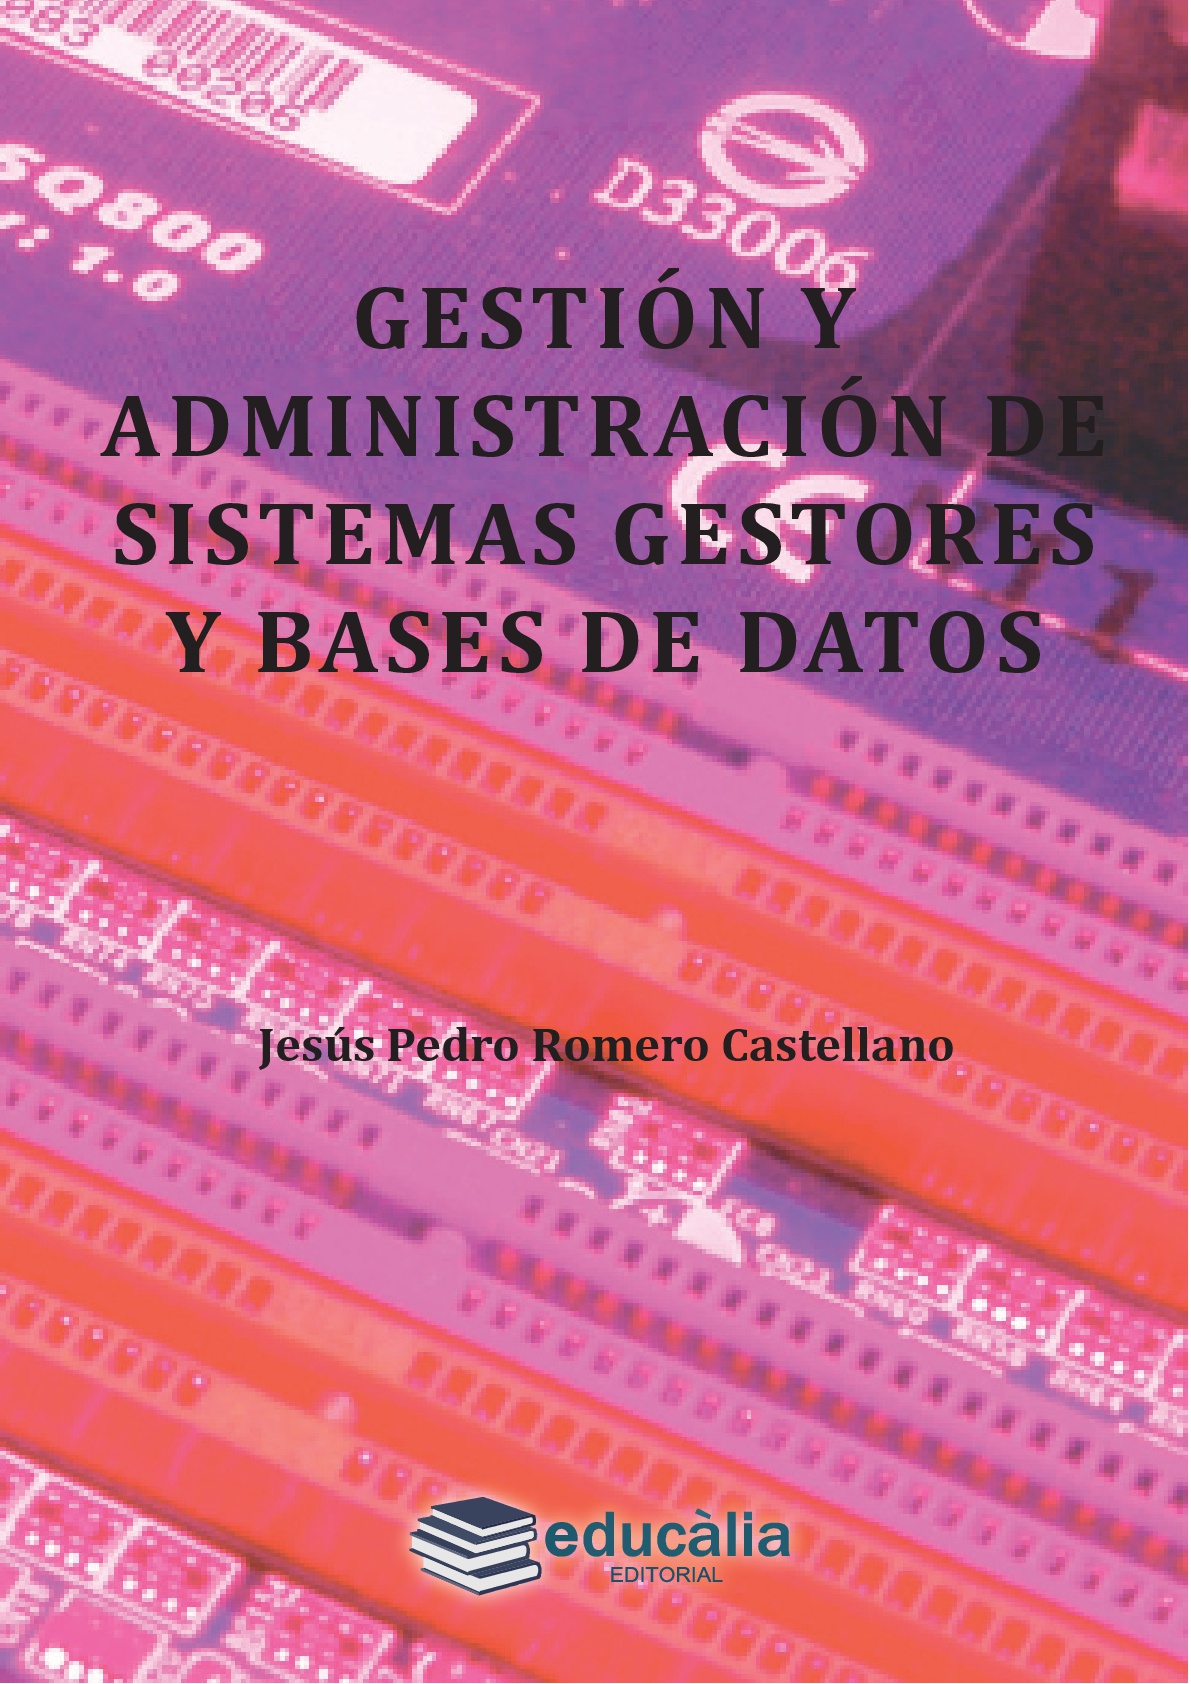 Gestión y administración de sistemas gestores y bases de datos